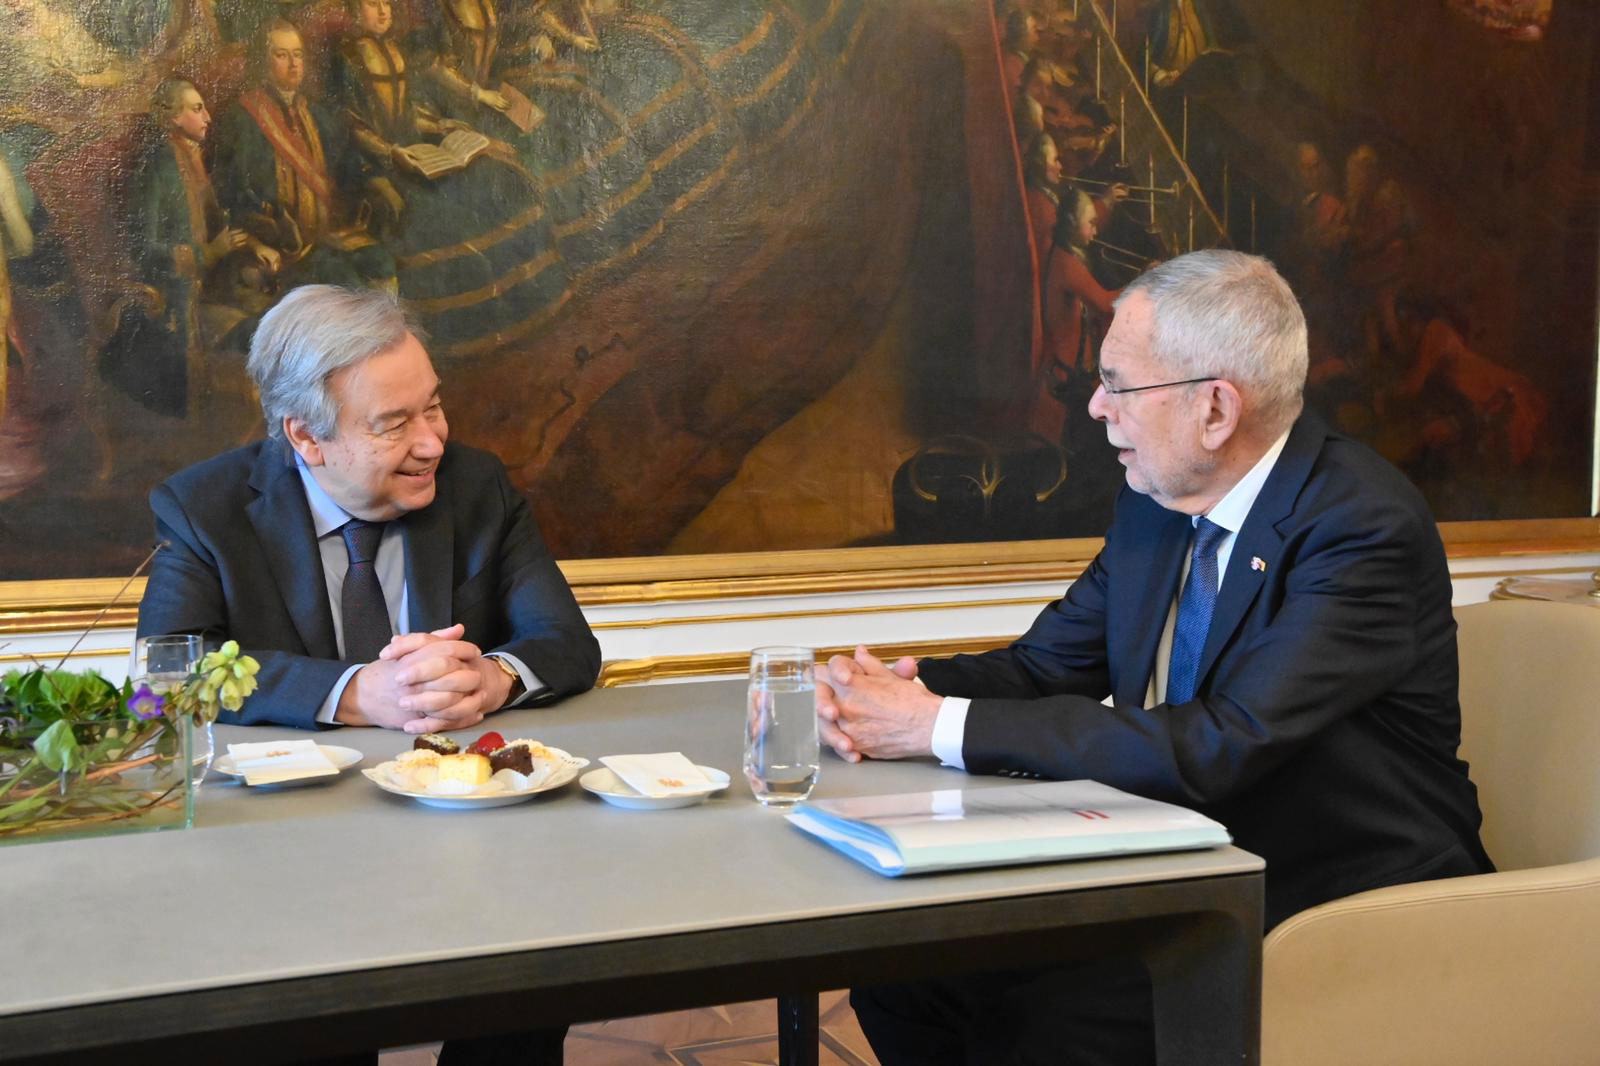 الأمين العام للأمم المتحدة أنطونيو غوتيريش يلتقي بالرئيس النمساوي ألكسندر فان دير بيلين.